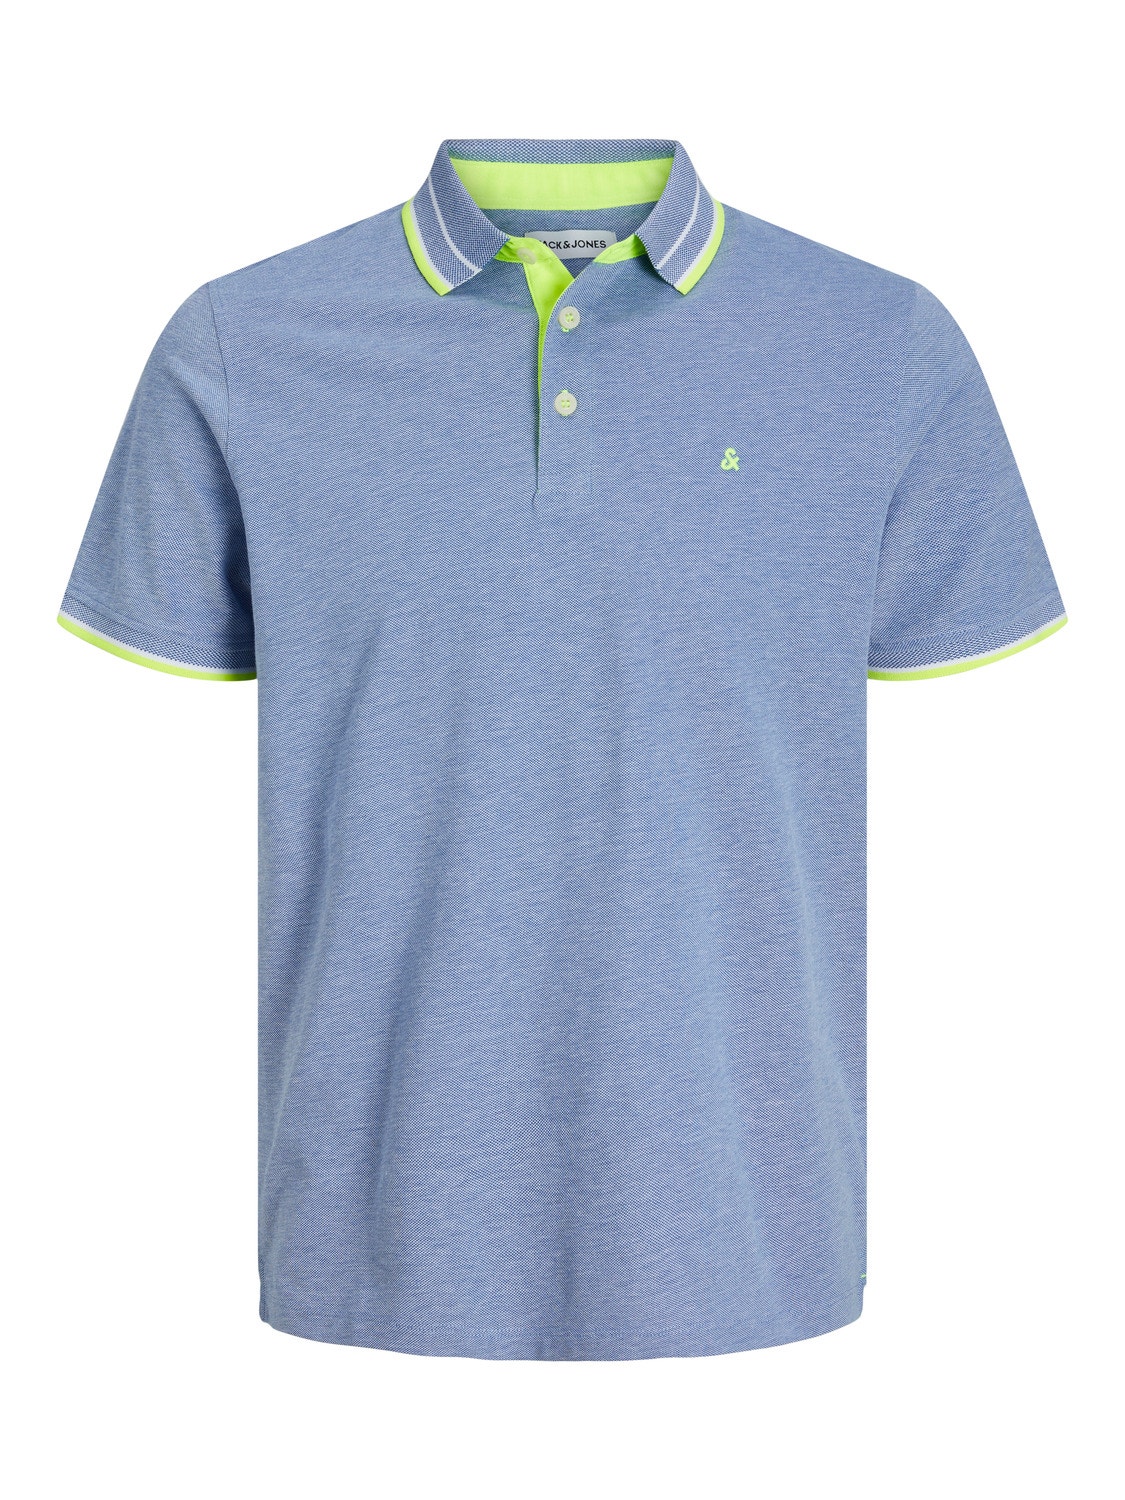 Jack & Jones Plus Size T-shirt Semplice -Bright Cobalt - 12143859